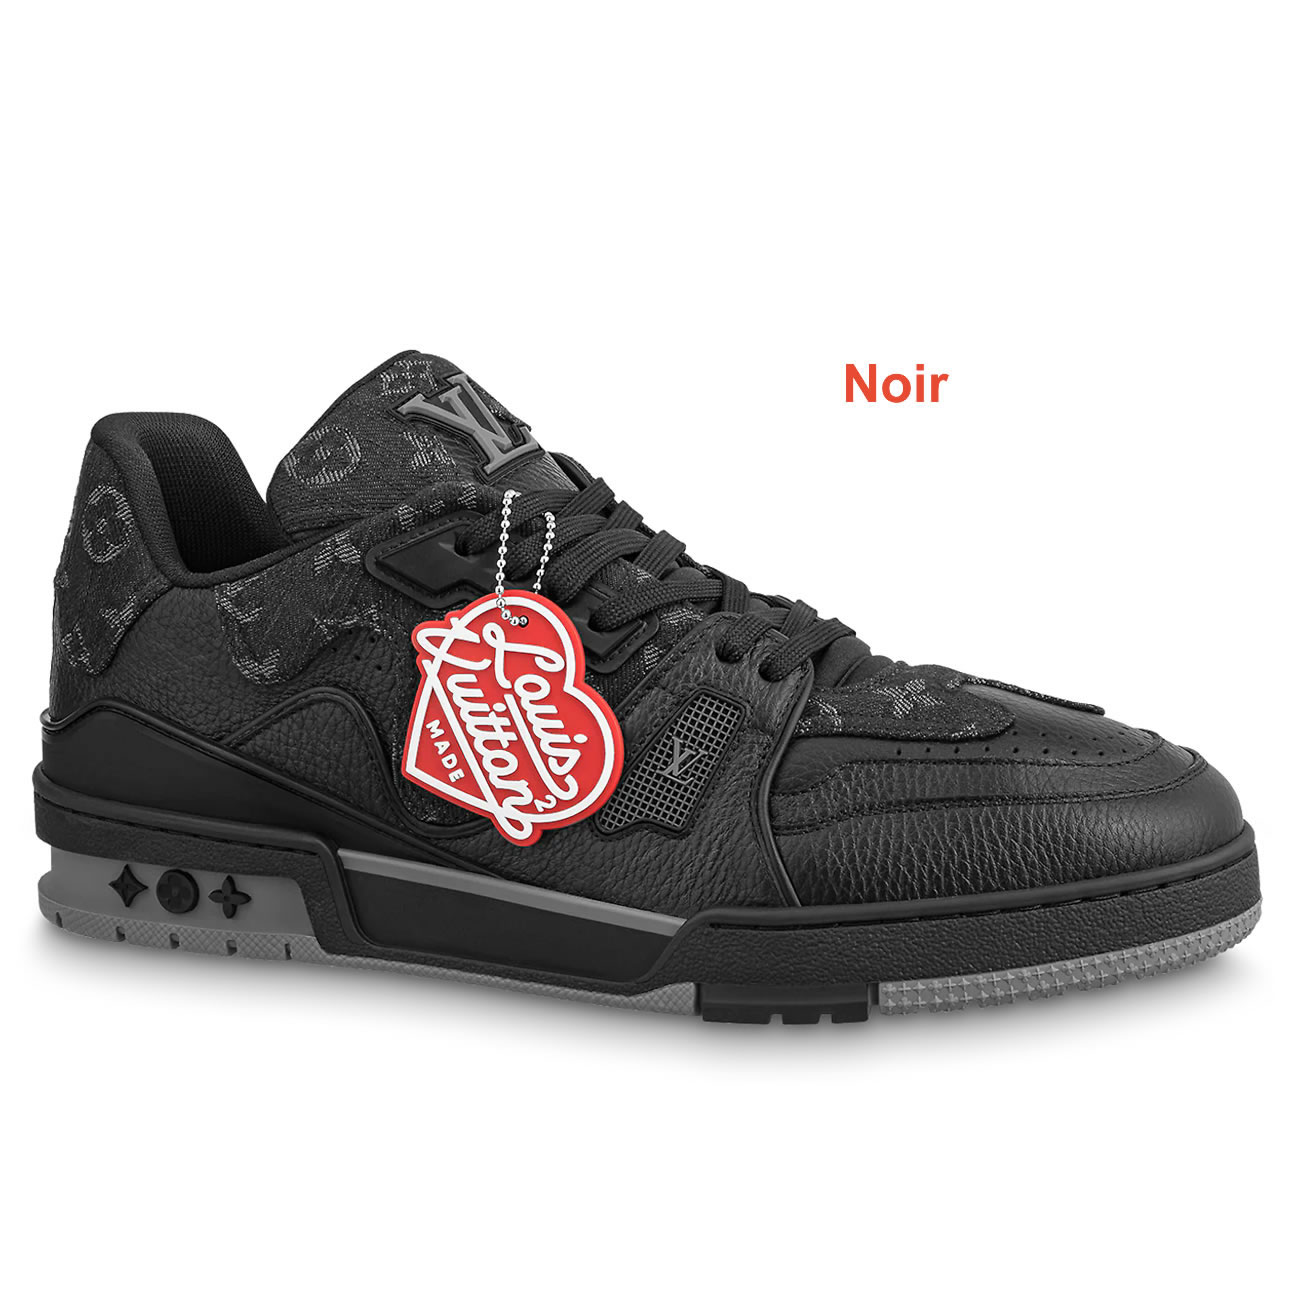 New L V Trainer Sneaker Shoes Noir (1) - newkick.org